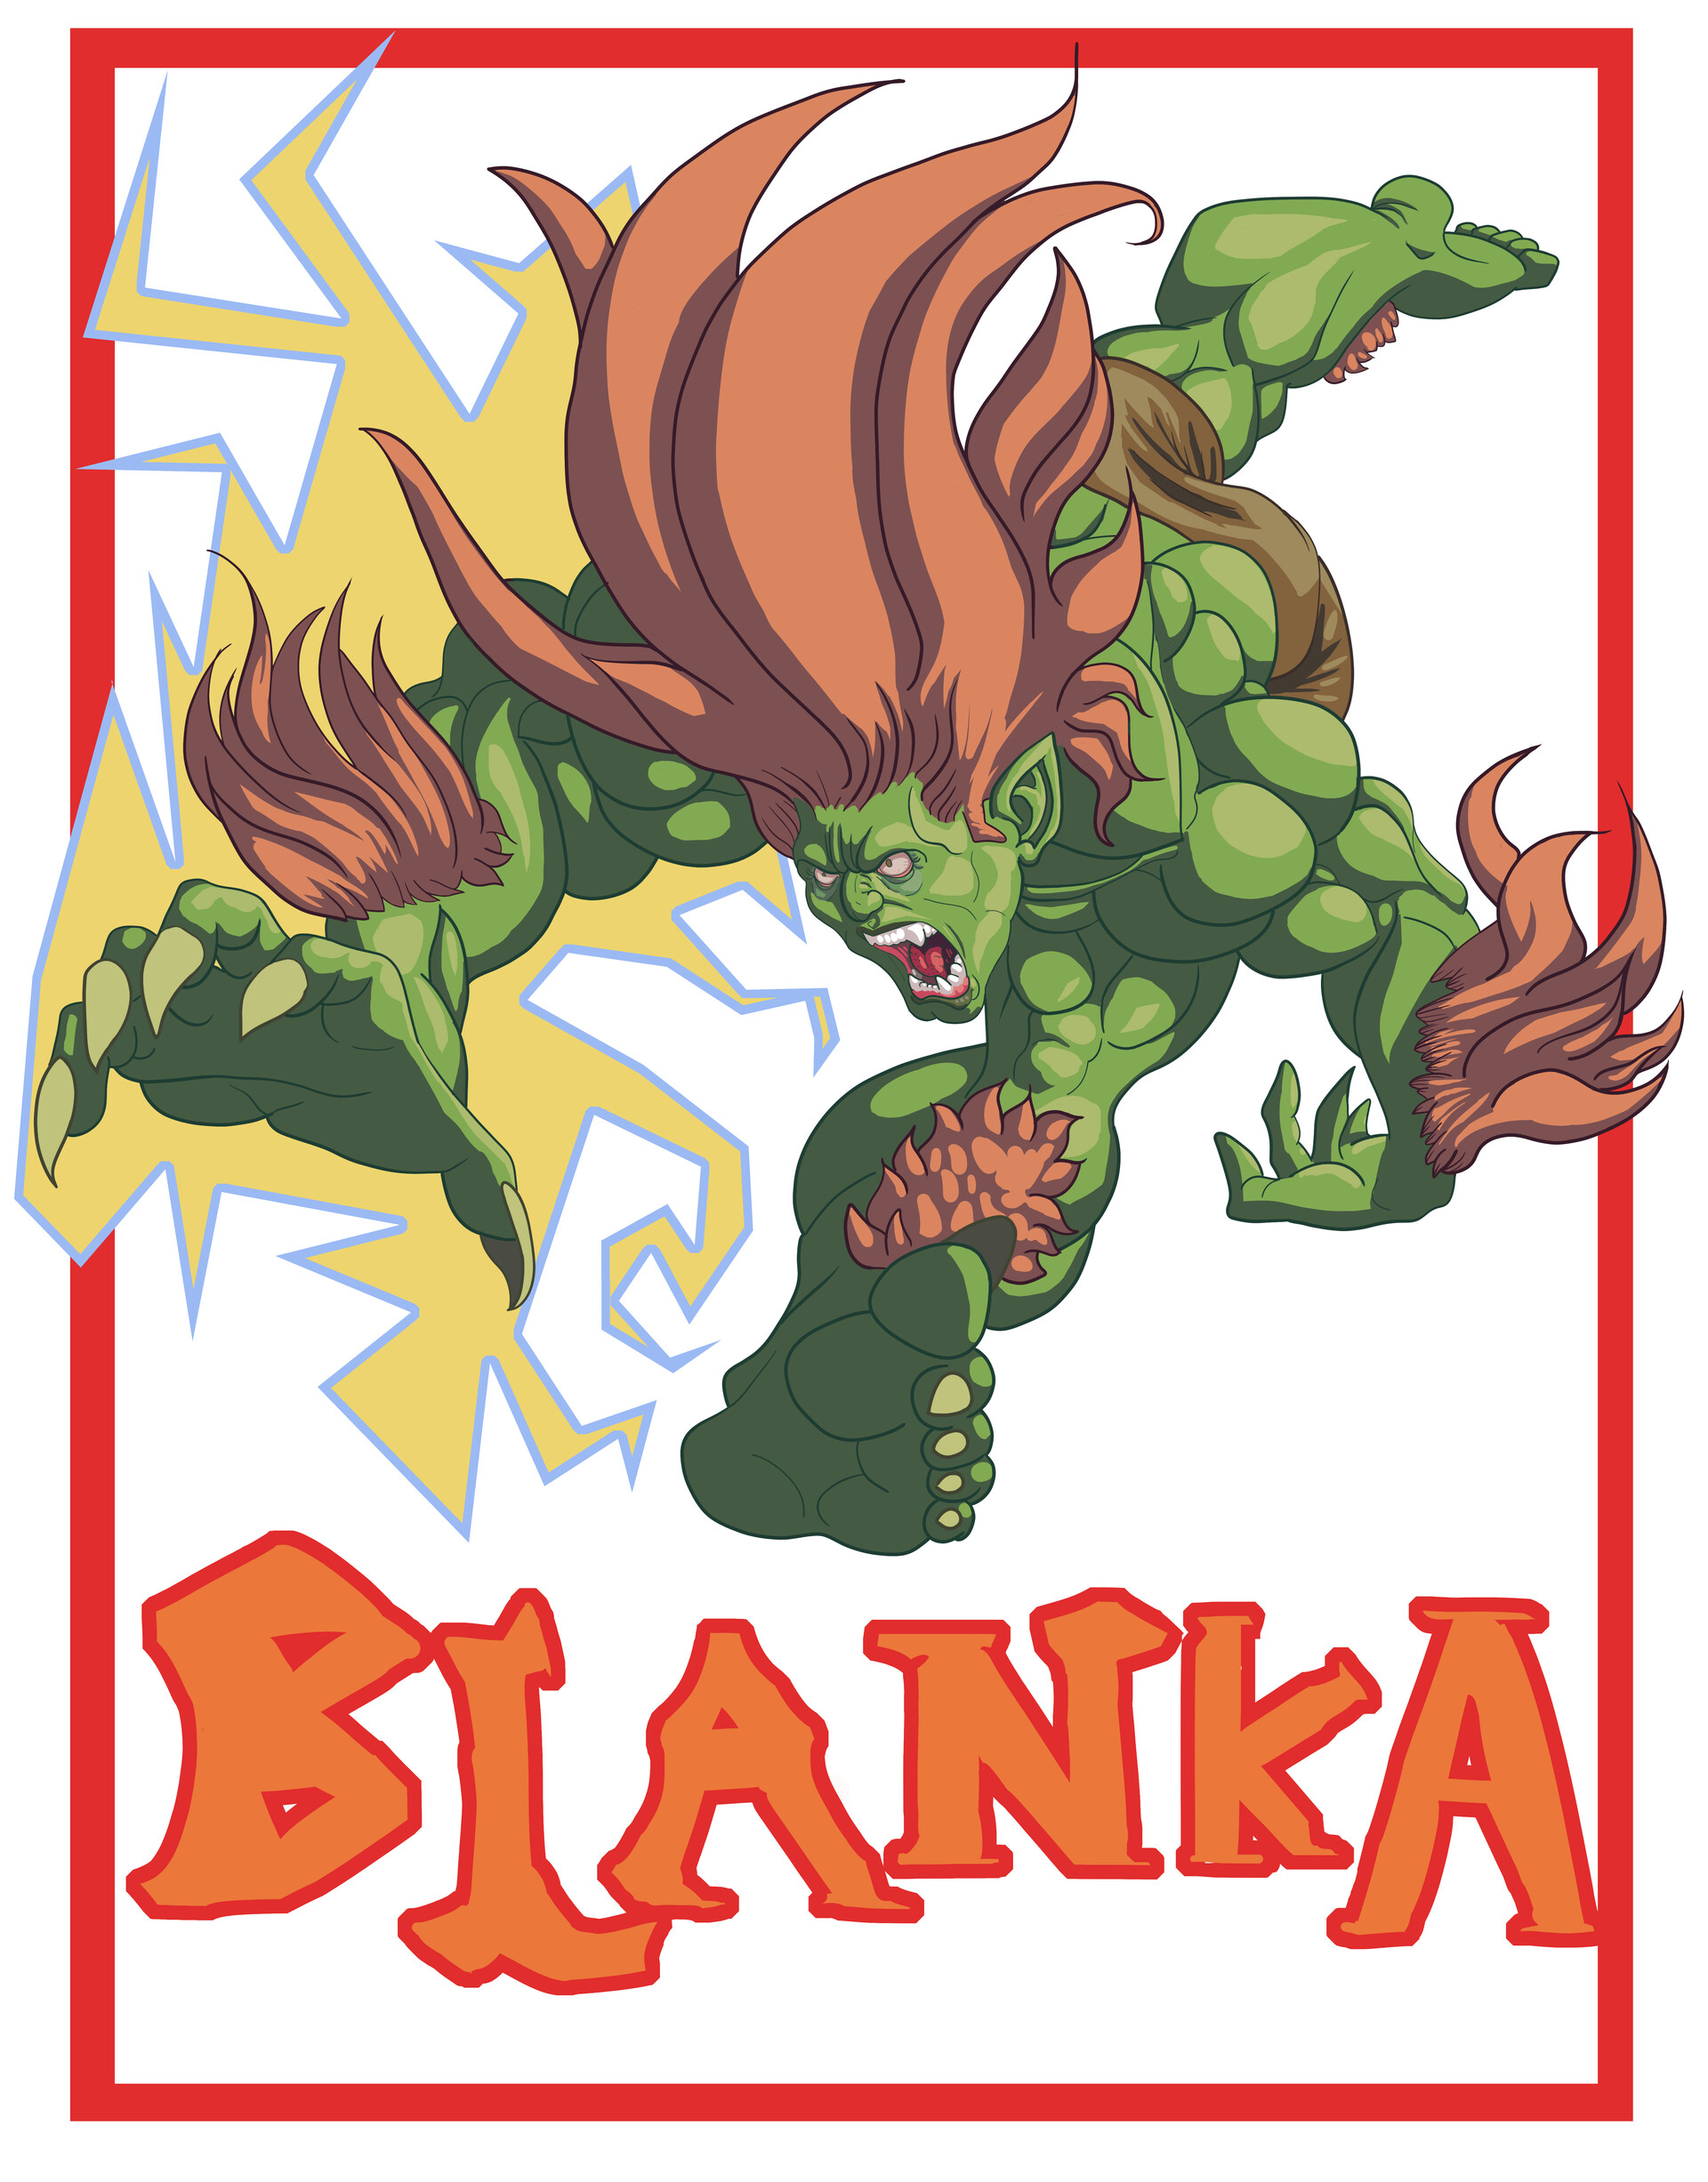 ArtStation - Blanka - Street Fighter Fan Art